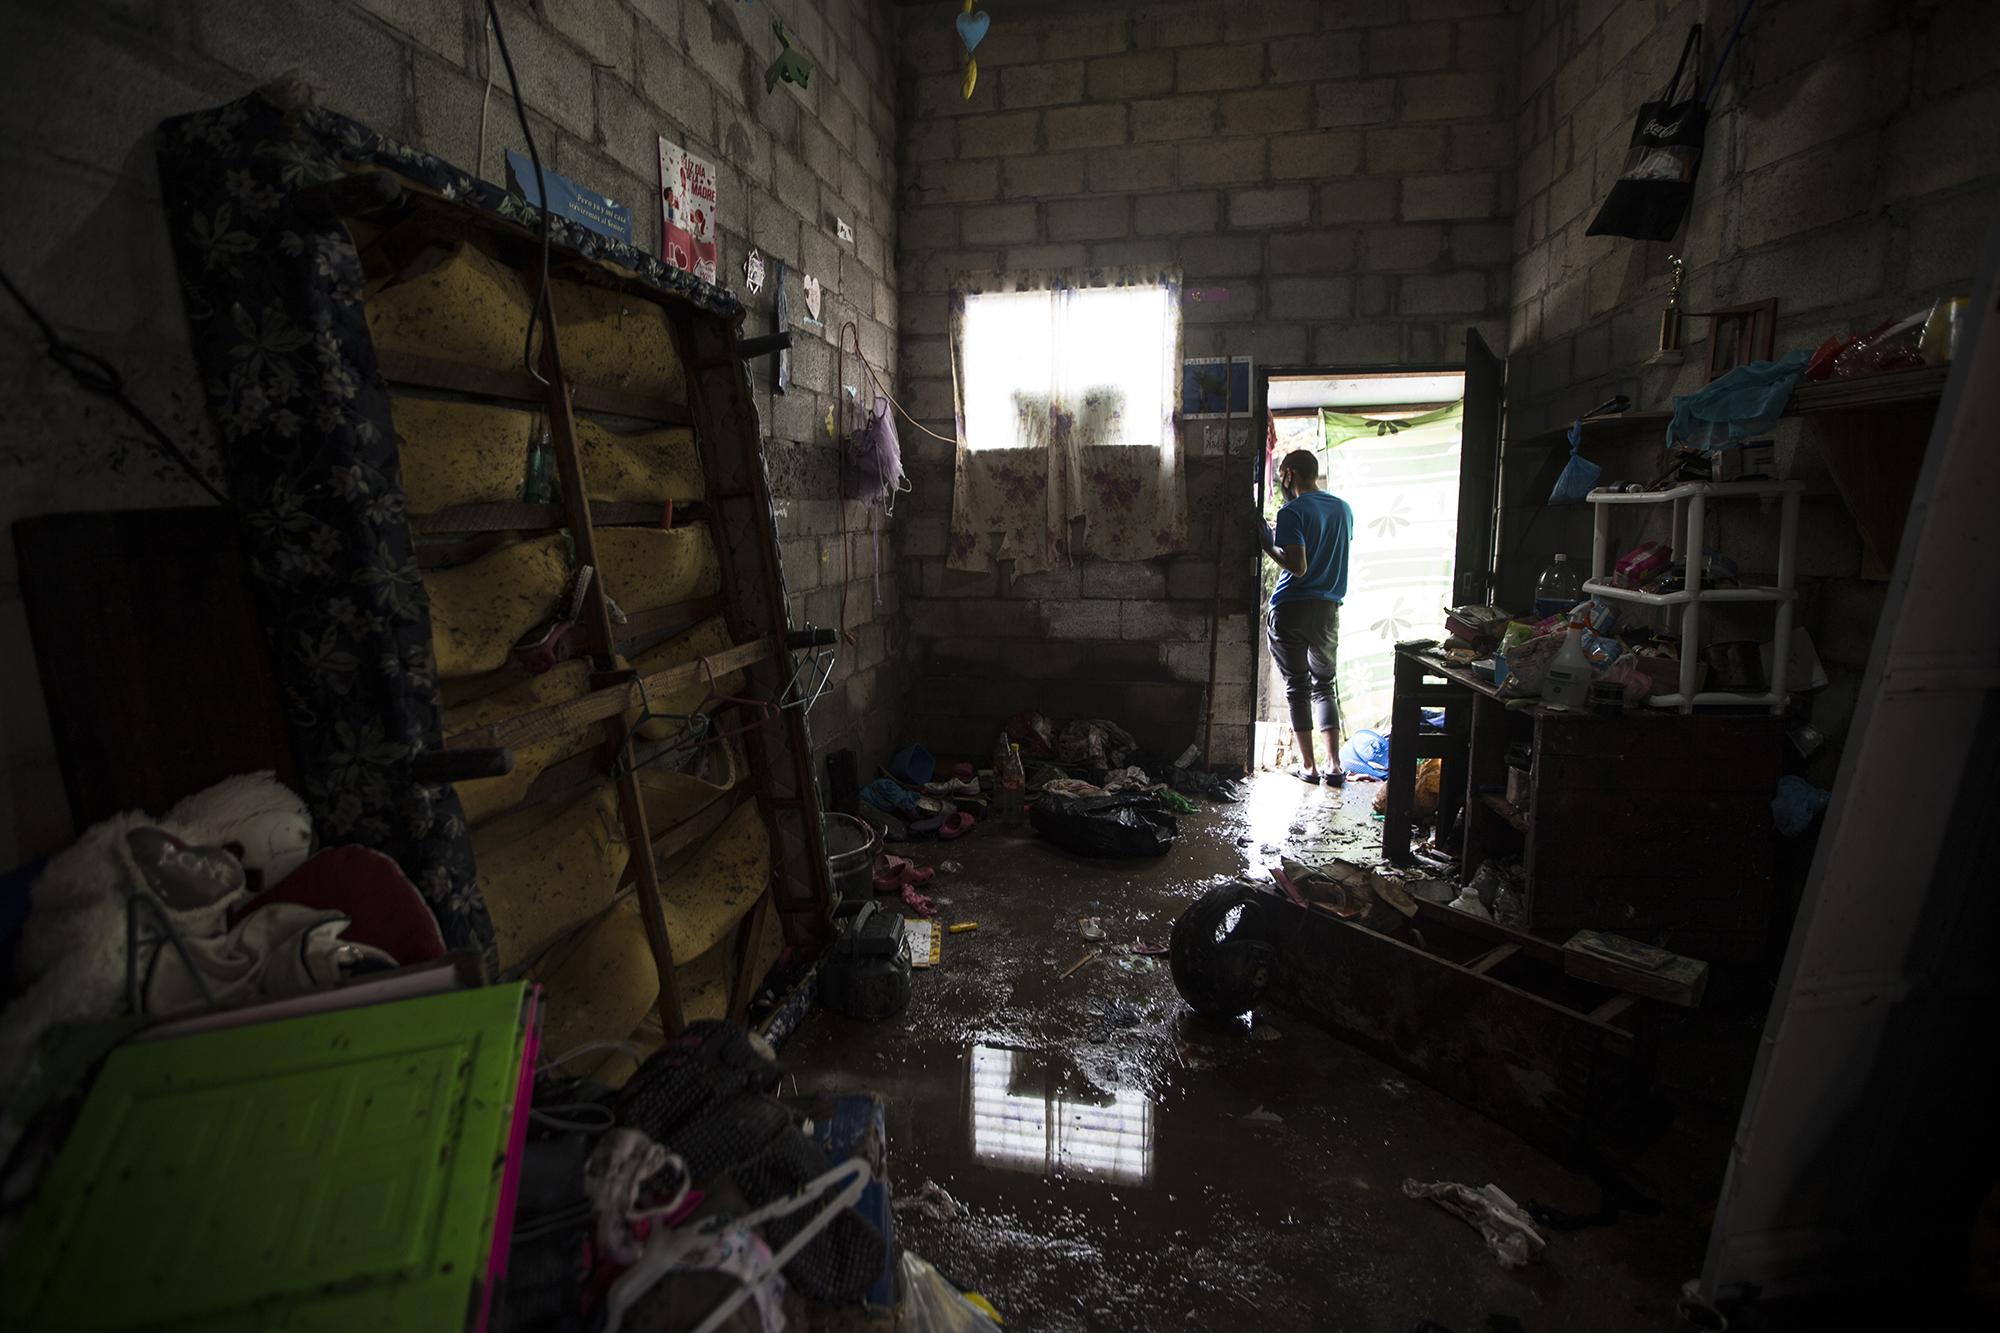 Aquí había una tienda que vendía ropa, churros y sandalias. La familia Aguilar vive en las orillas del pasaje principal de la comunidad Nuevo Israel. La lluvia no les dejó nada. Esta vivienda está a punto de colapsar, al igual que otras decenas de casas de la comunidad.